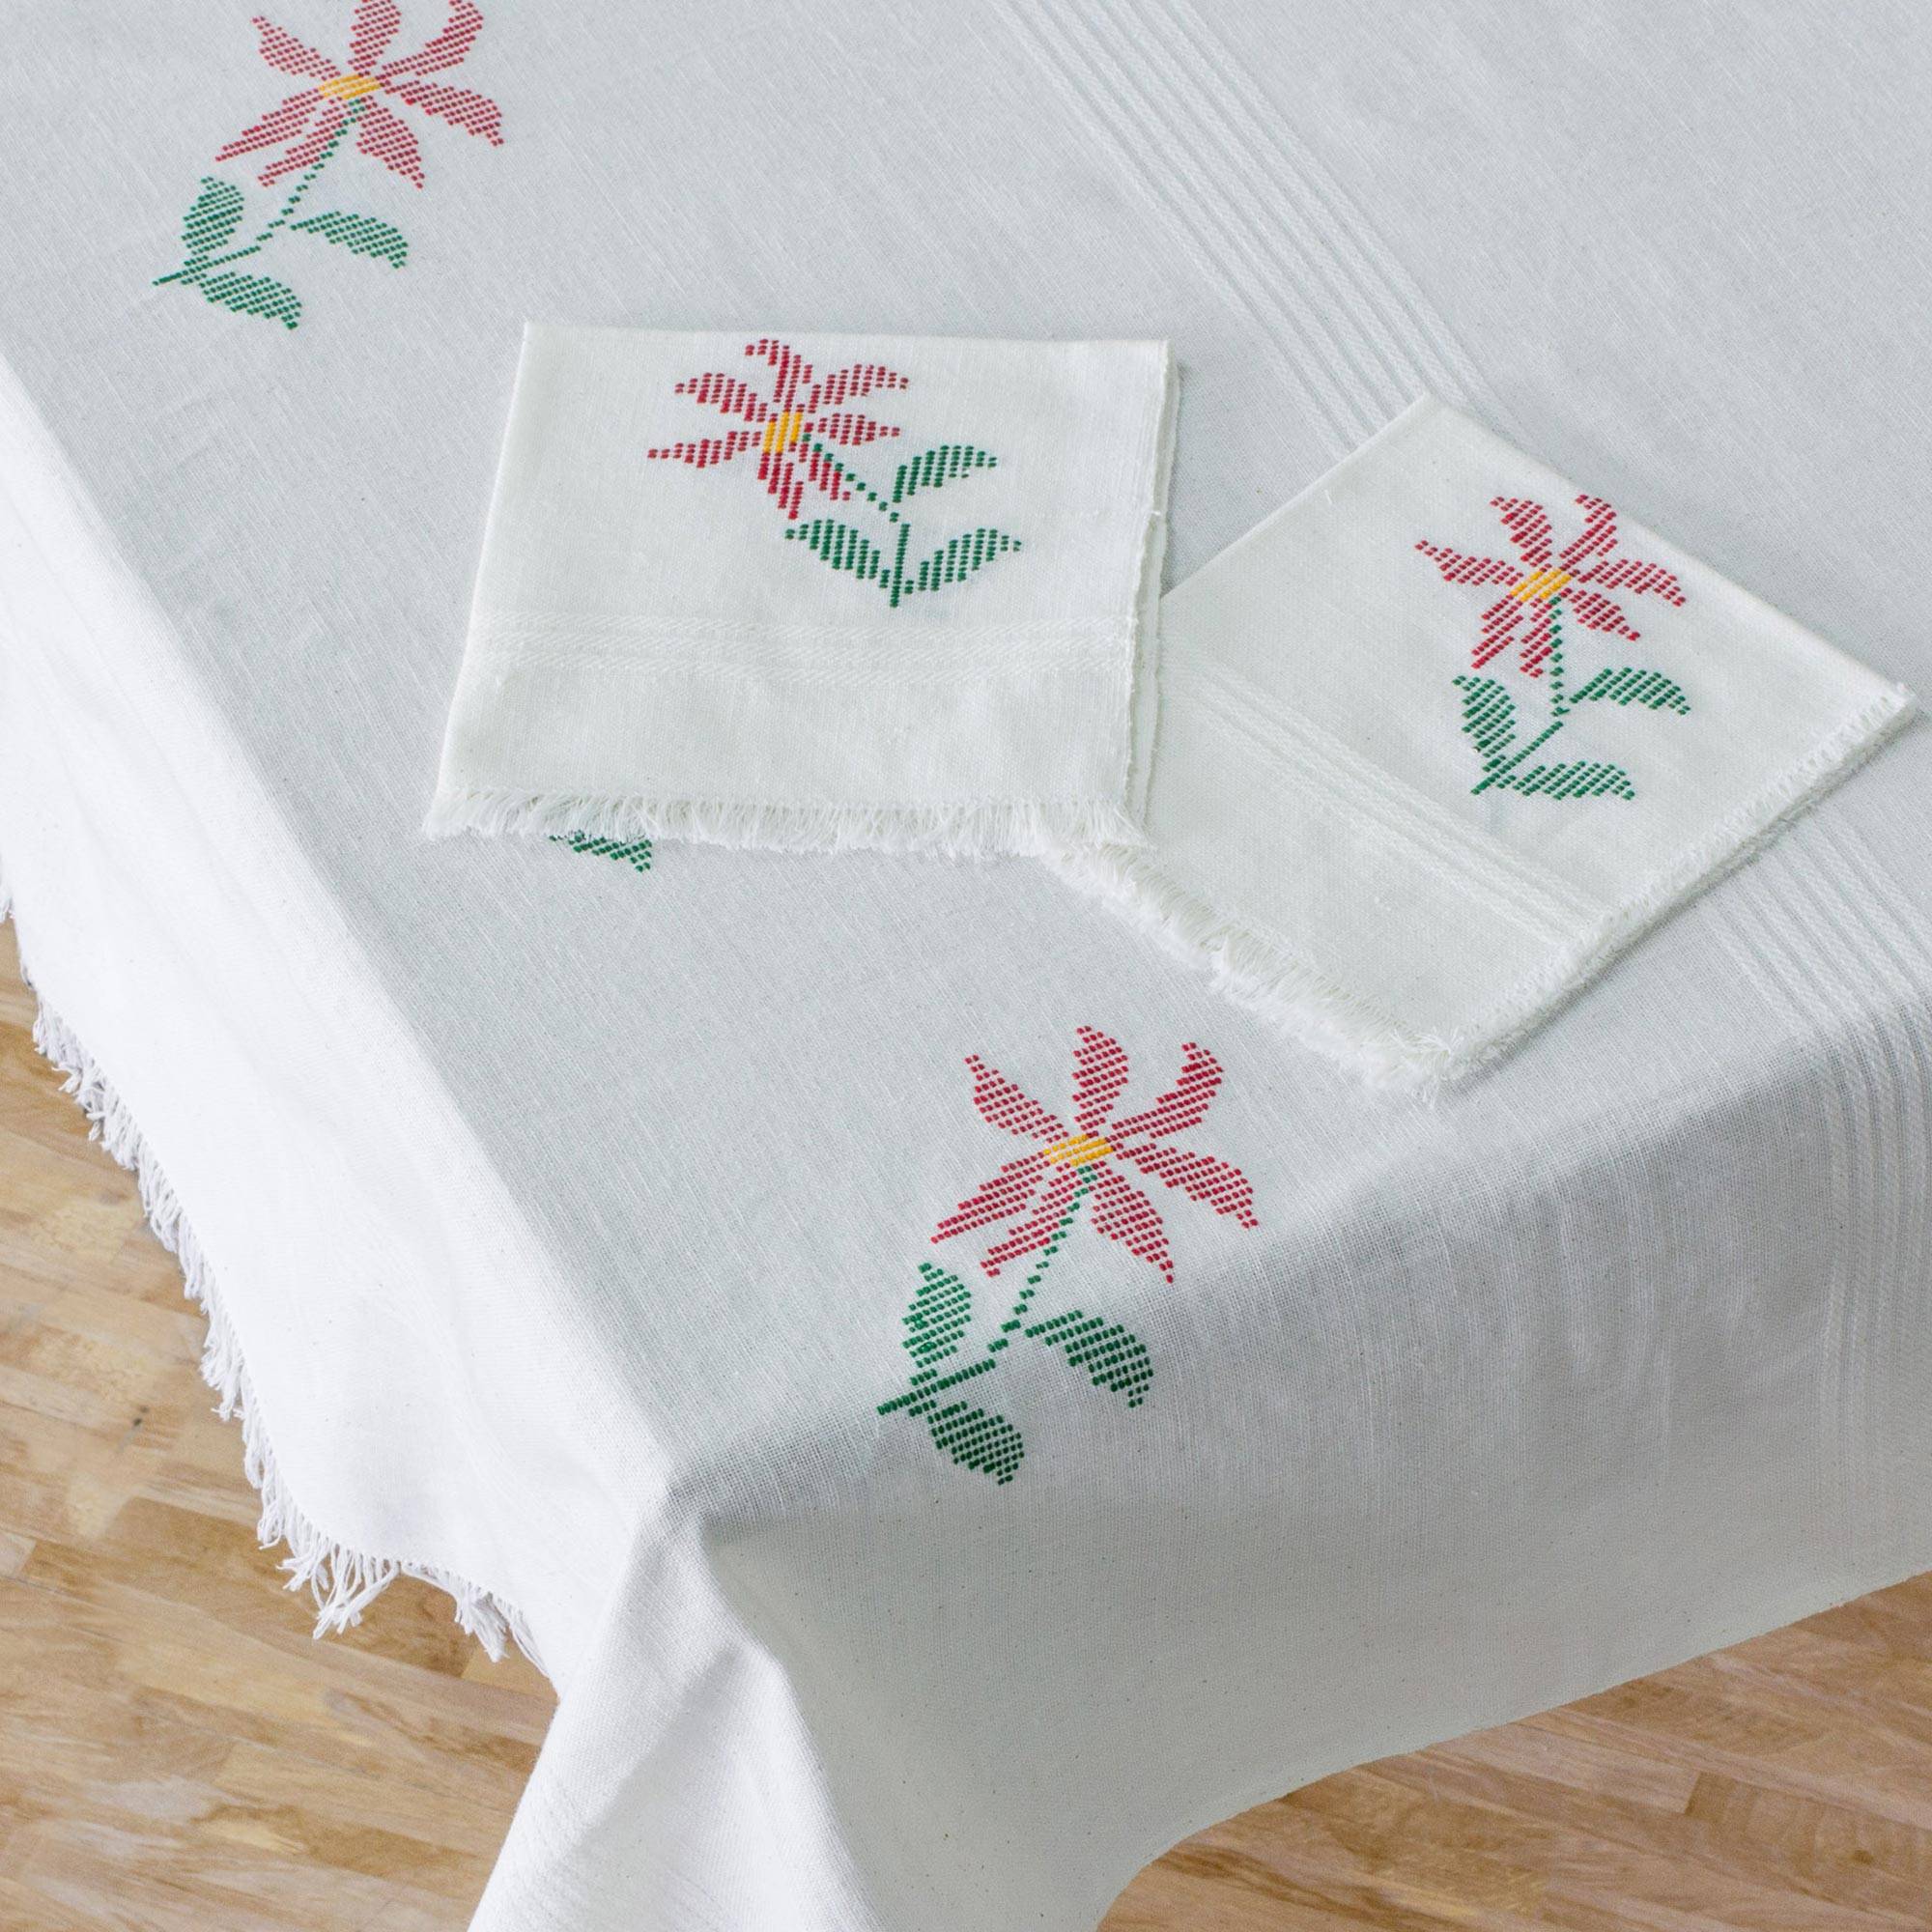 Poinsettia Grace White Floral Cotton Table Linen Set